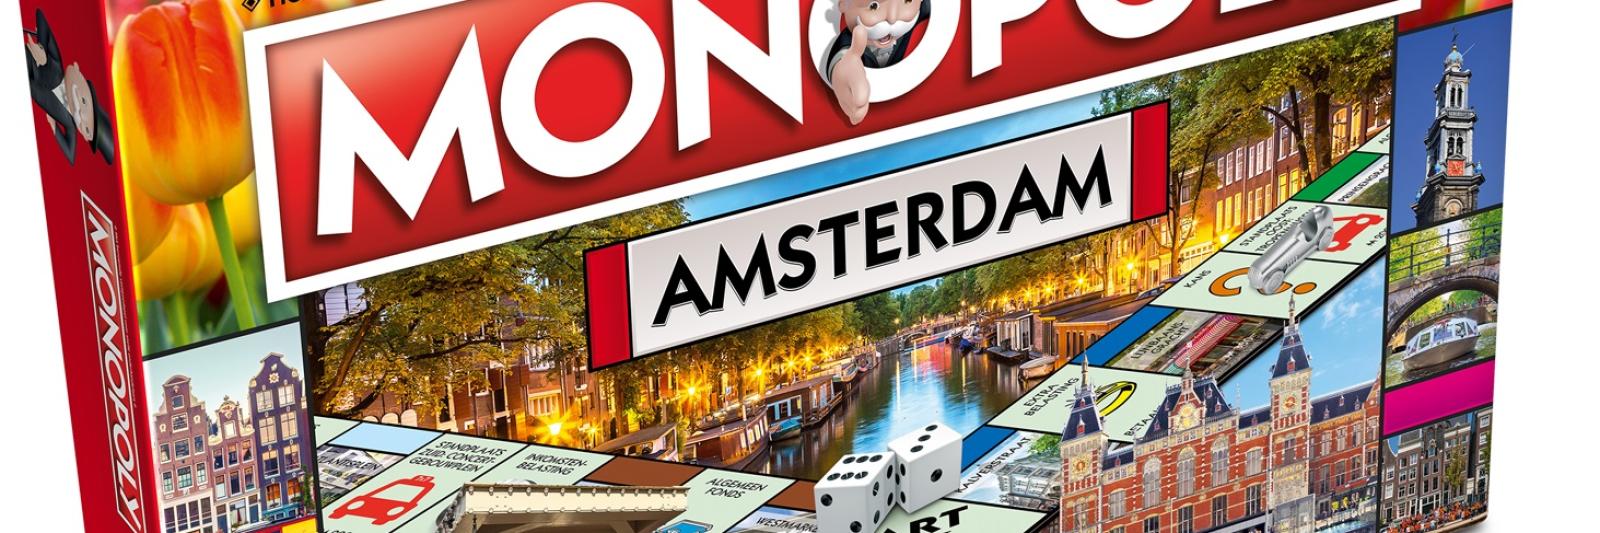 Pijlpunt seinpaal Mijlpaal Amsterdam krijgt eigen Monopoly-editie - AT5